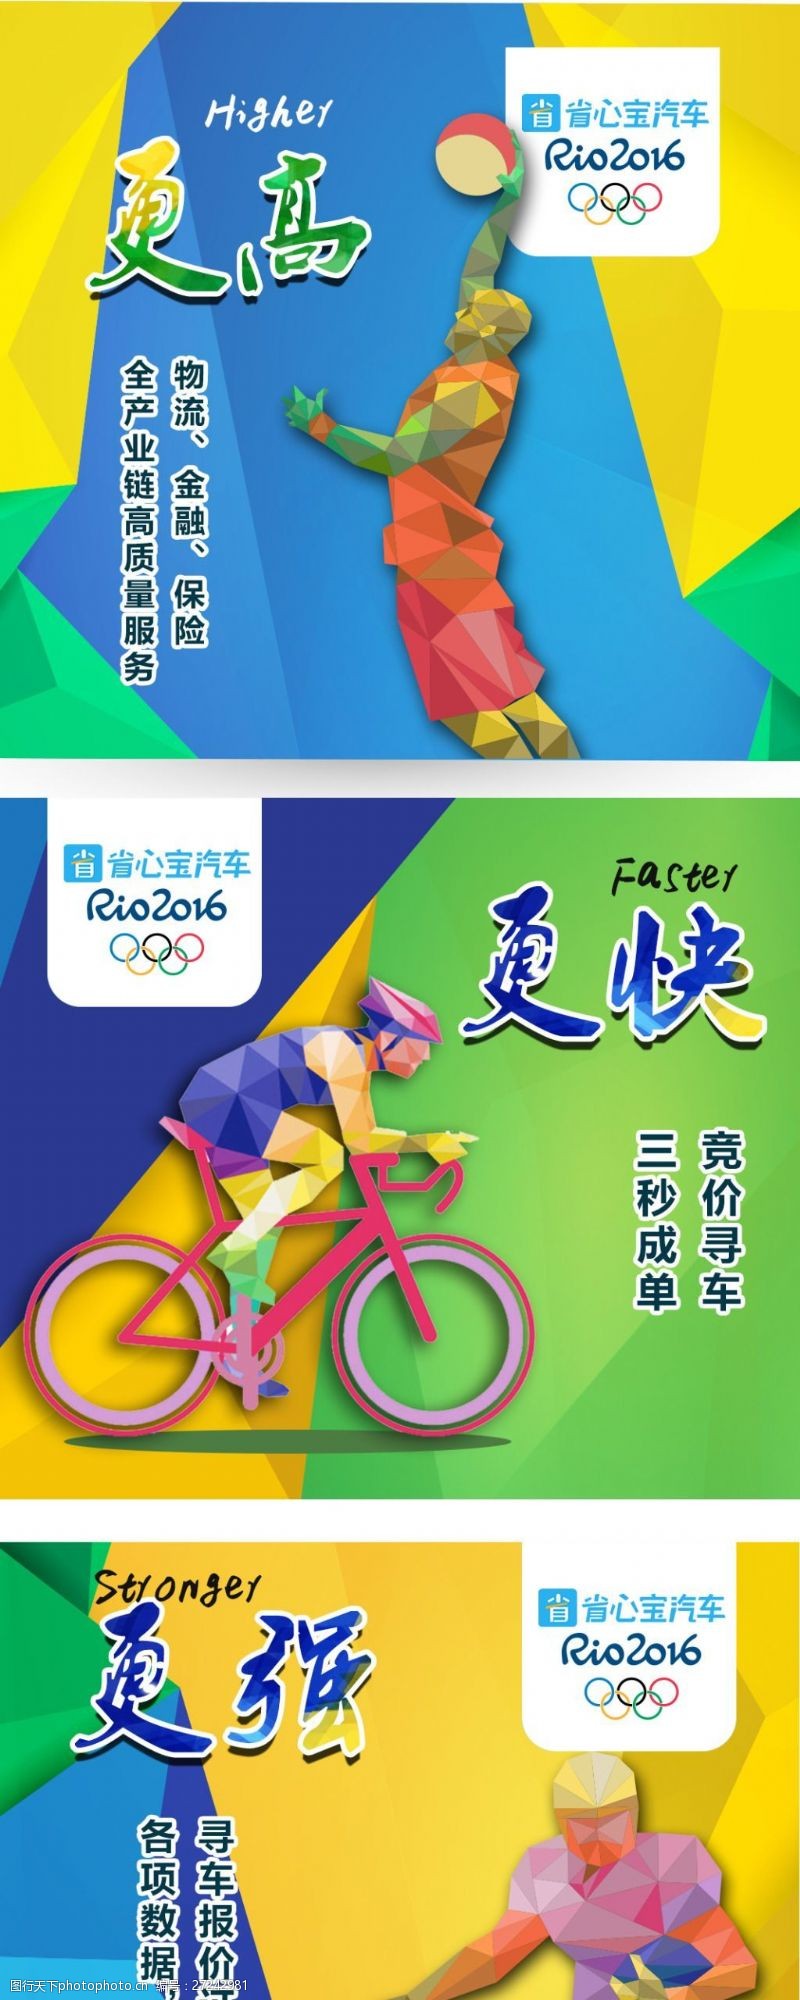 更高更快更强奥运主题更高更强更快宣传海报平面设计